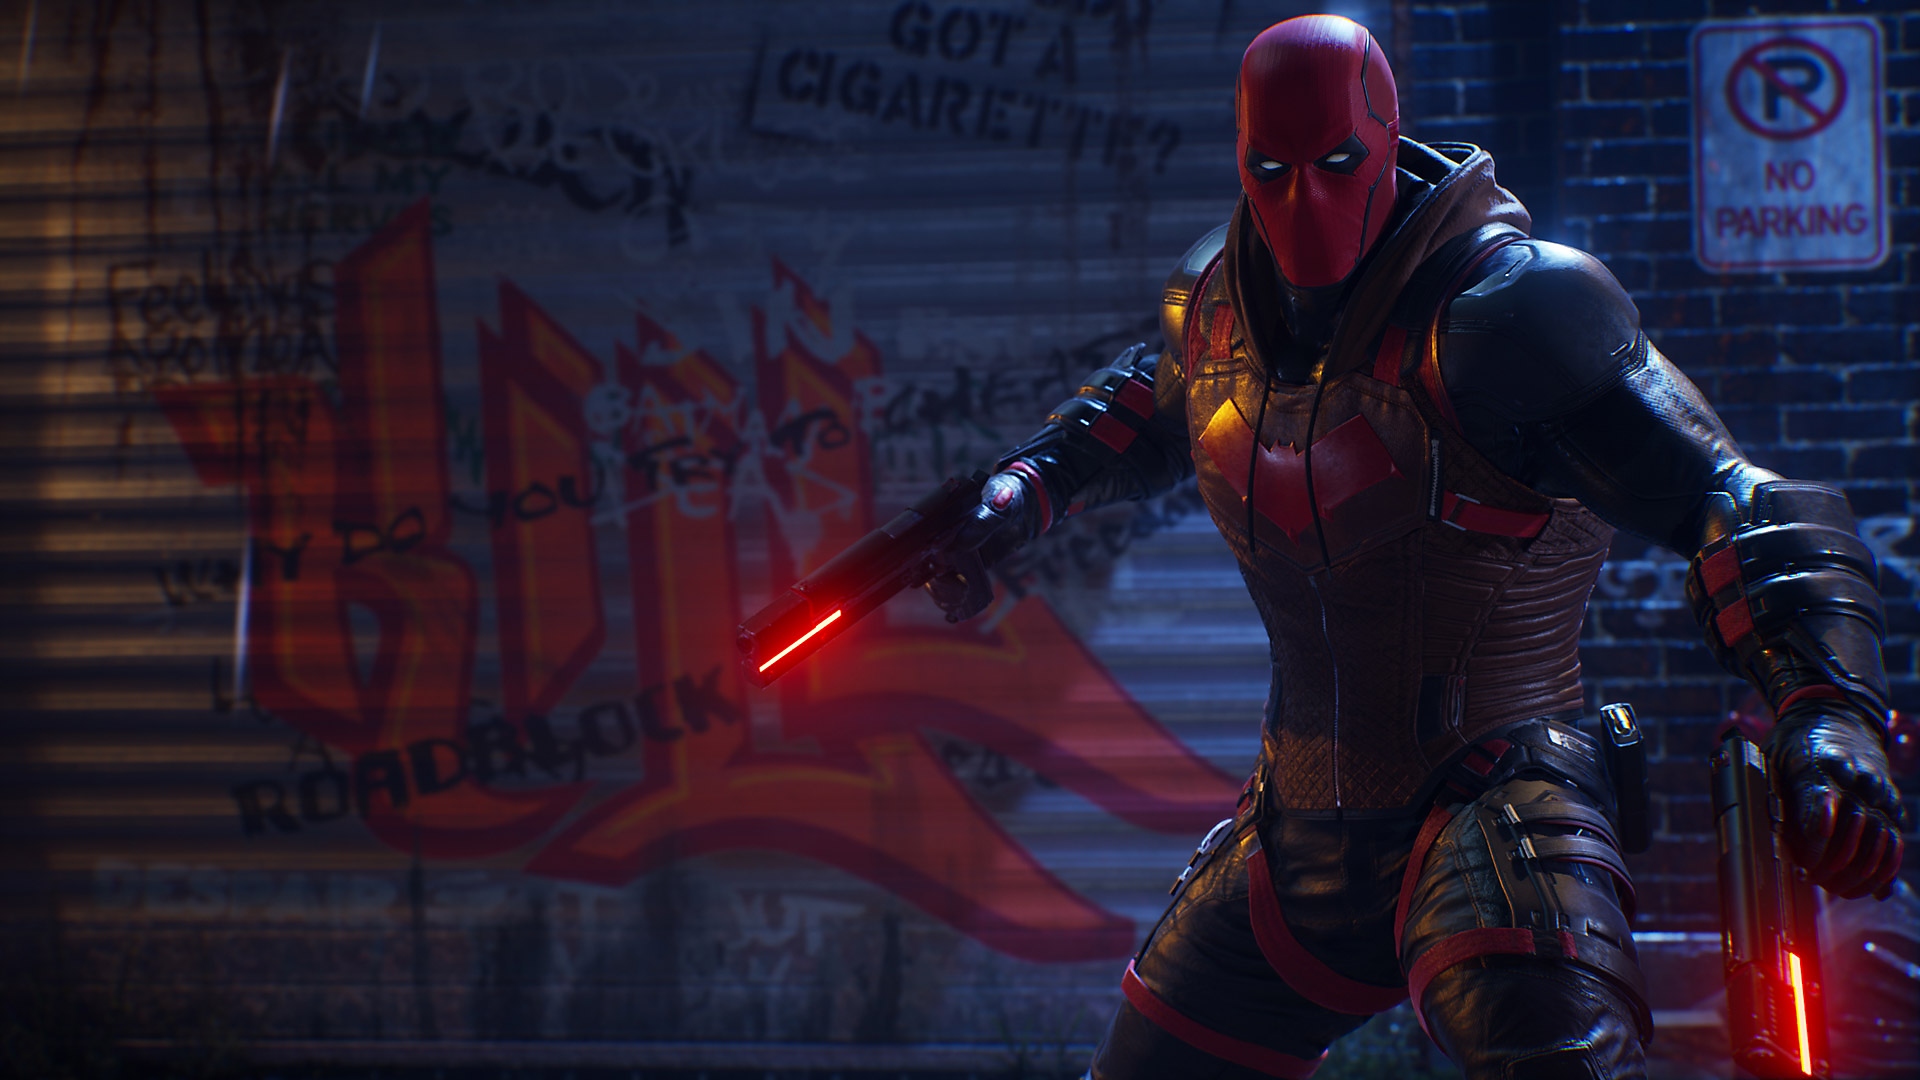 Gotham Knights - Capture d'écran - Red Hood avec une arme dans chaque main